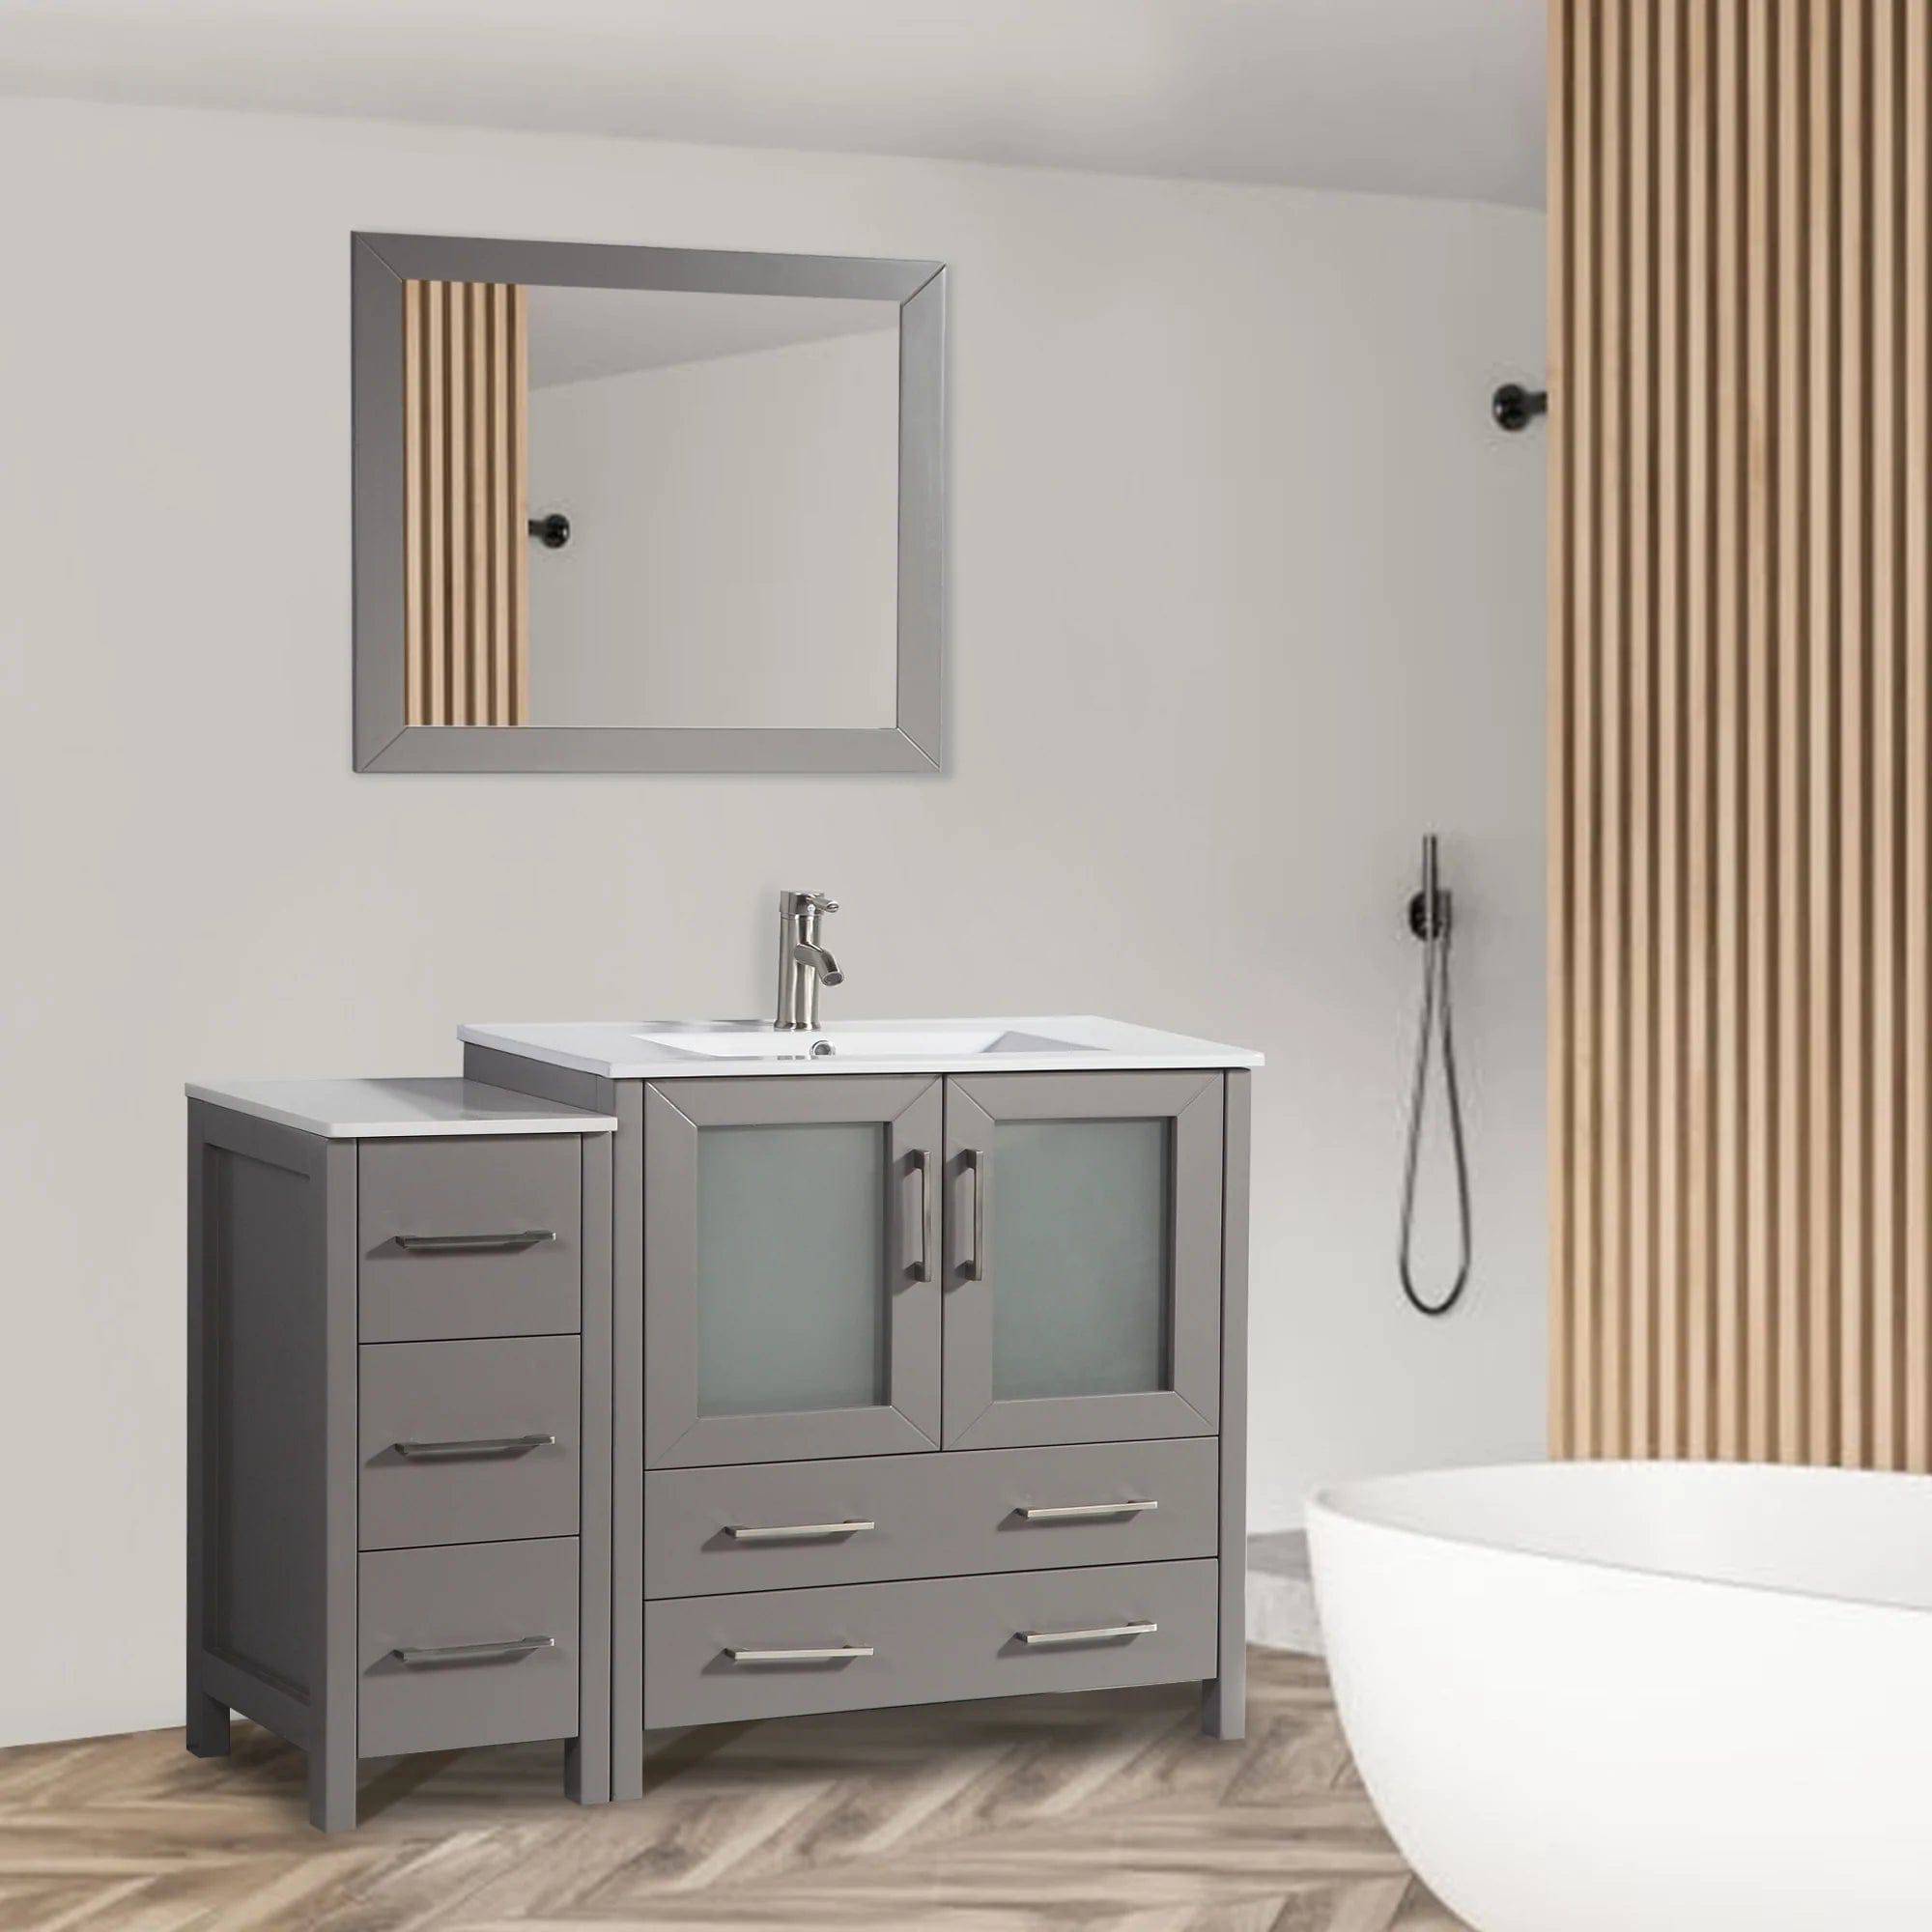 42 in. Single Sink Bathroom Vanity Set in Gray - Decohub Home